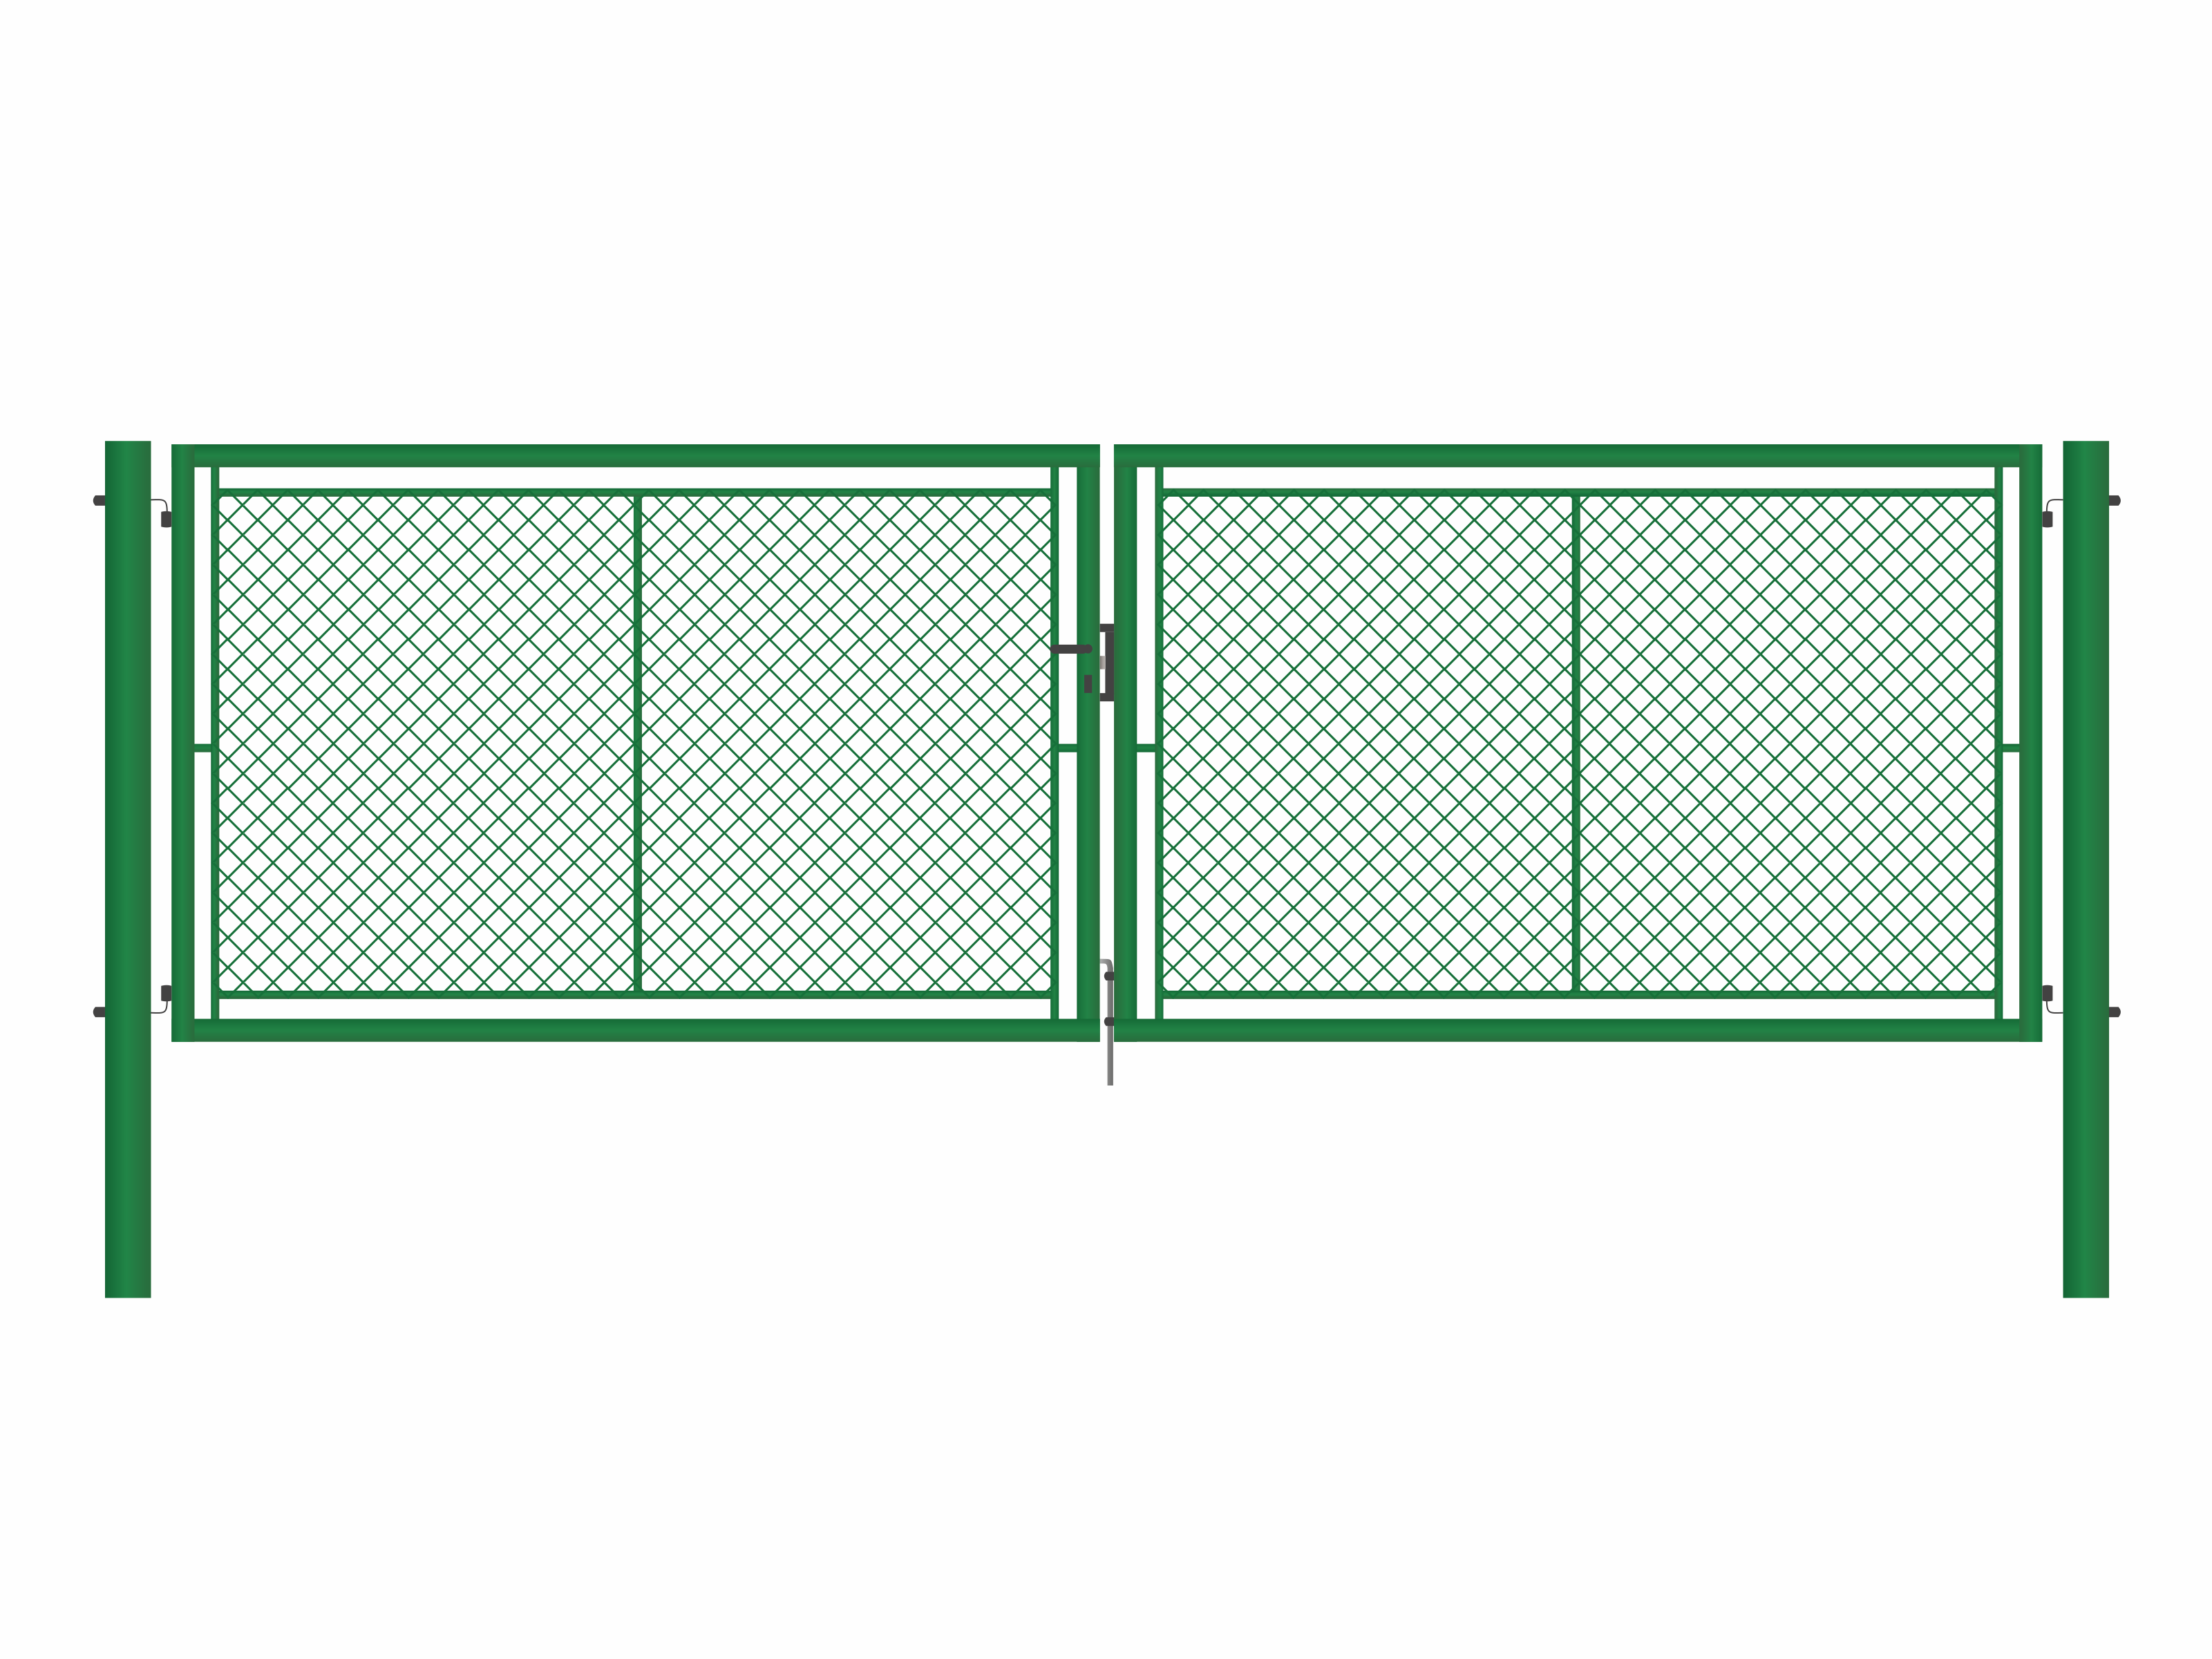 Brána zahradní dvoukřídlá zelená, výška 100 x 500 cm, FAB, s výplní klasického pletiva